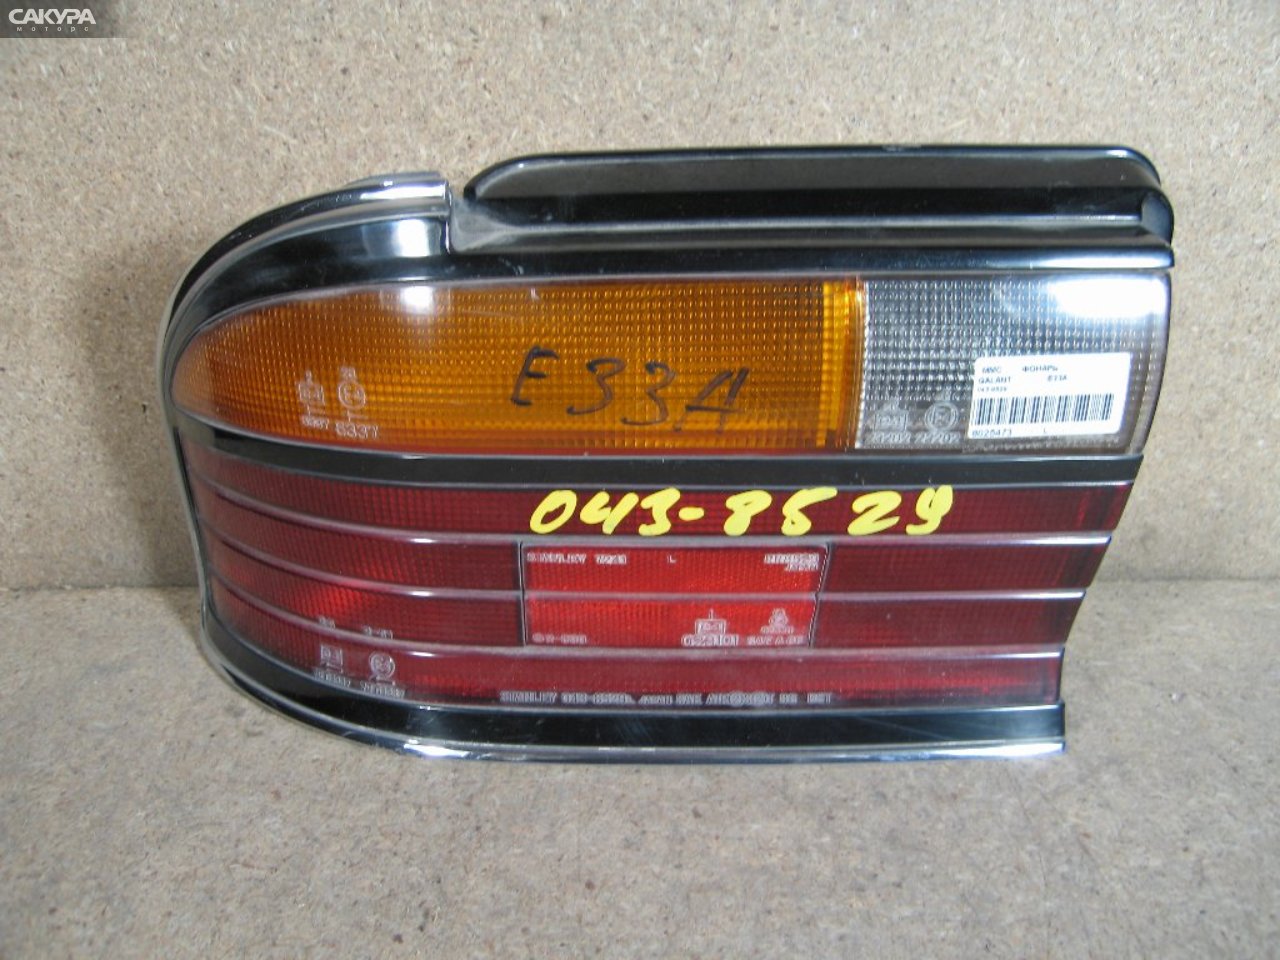 Фонарь стоп-сигнала левый Mitsubishi Galant E33A 043-8529: купить в Сакура Абакан.